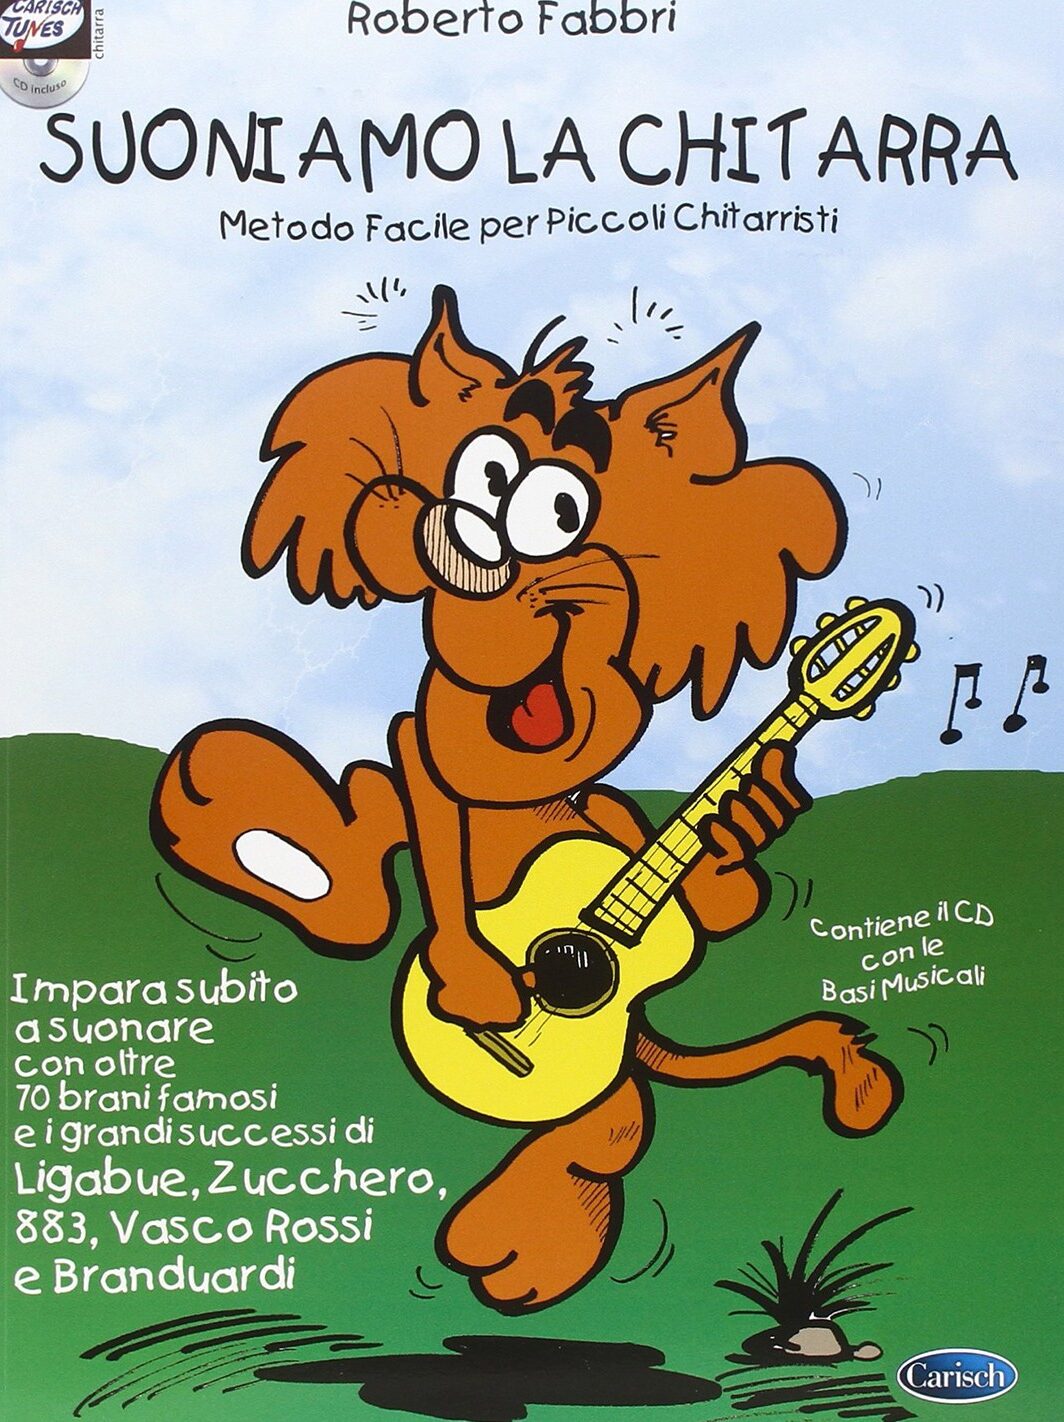 Suoniamo la chitarra vol1 Roberto Fabbri Carisch